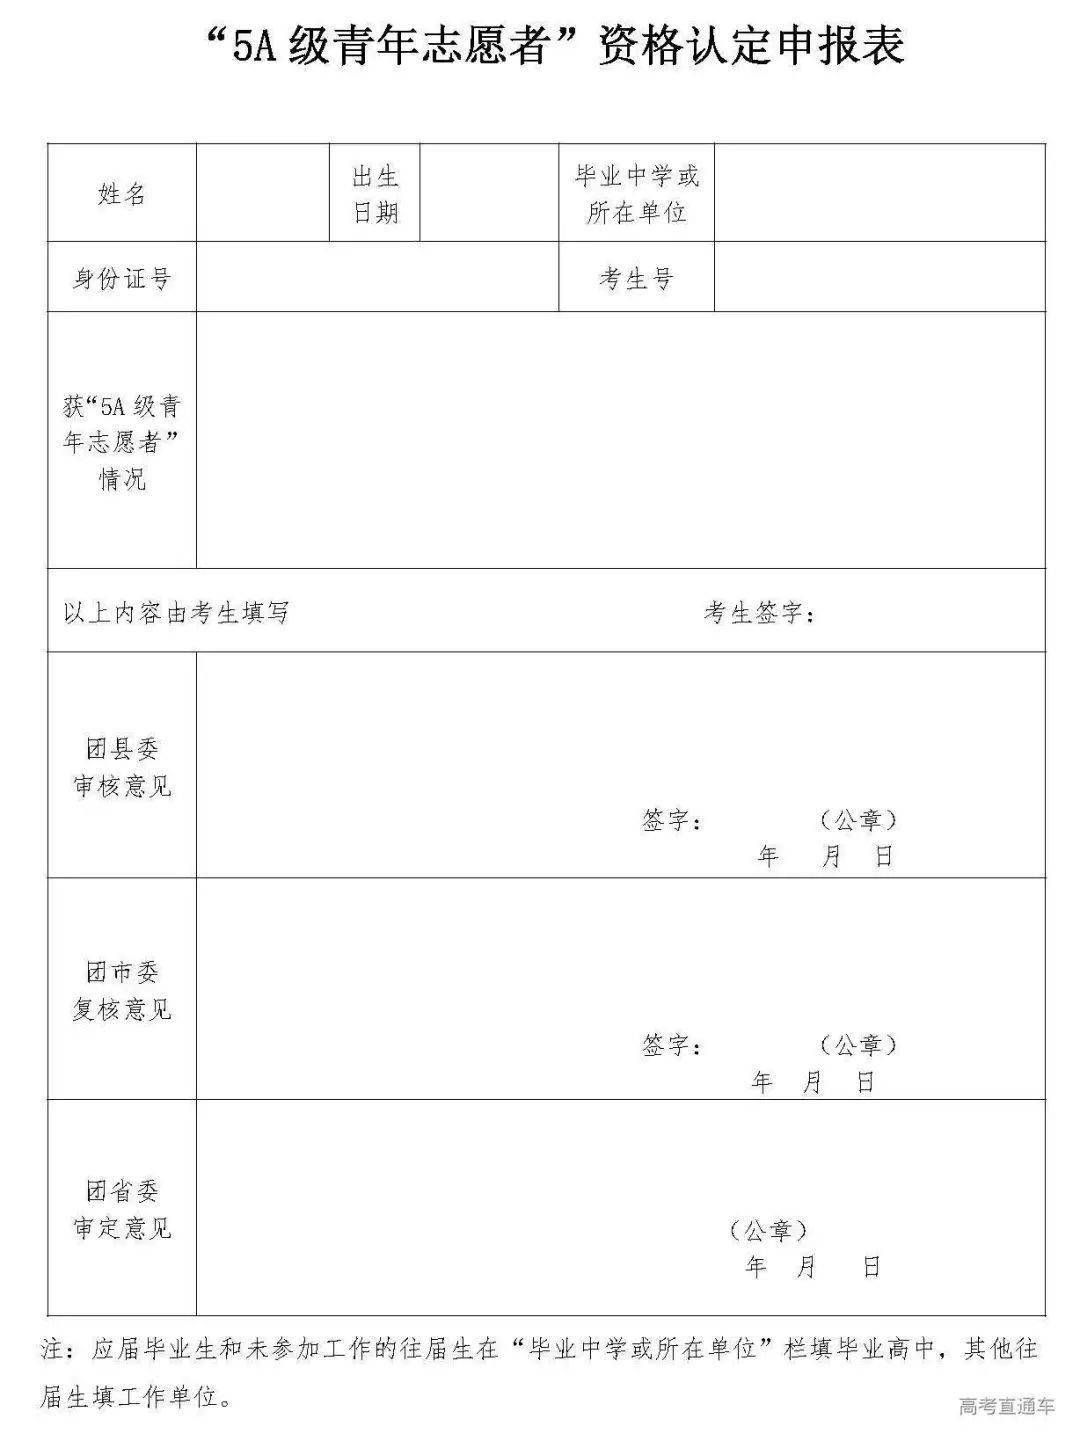 2021年四川高考加分政策及申报流程